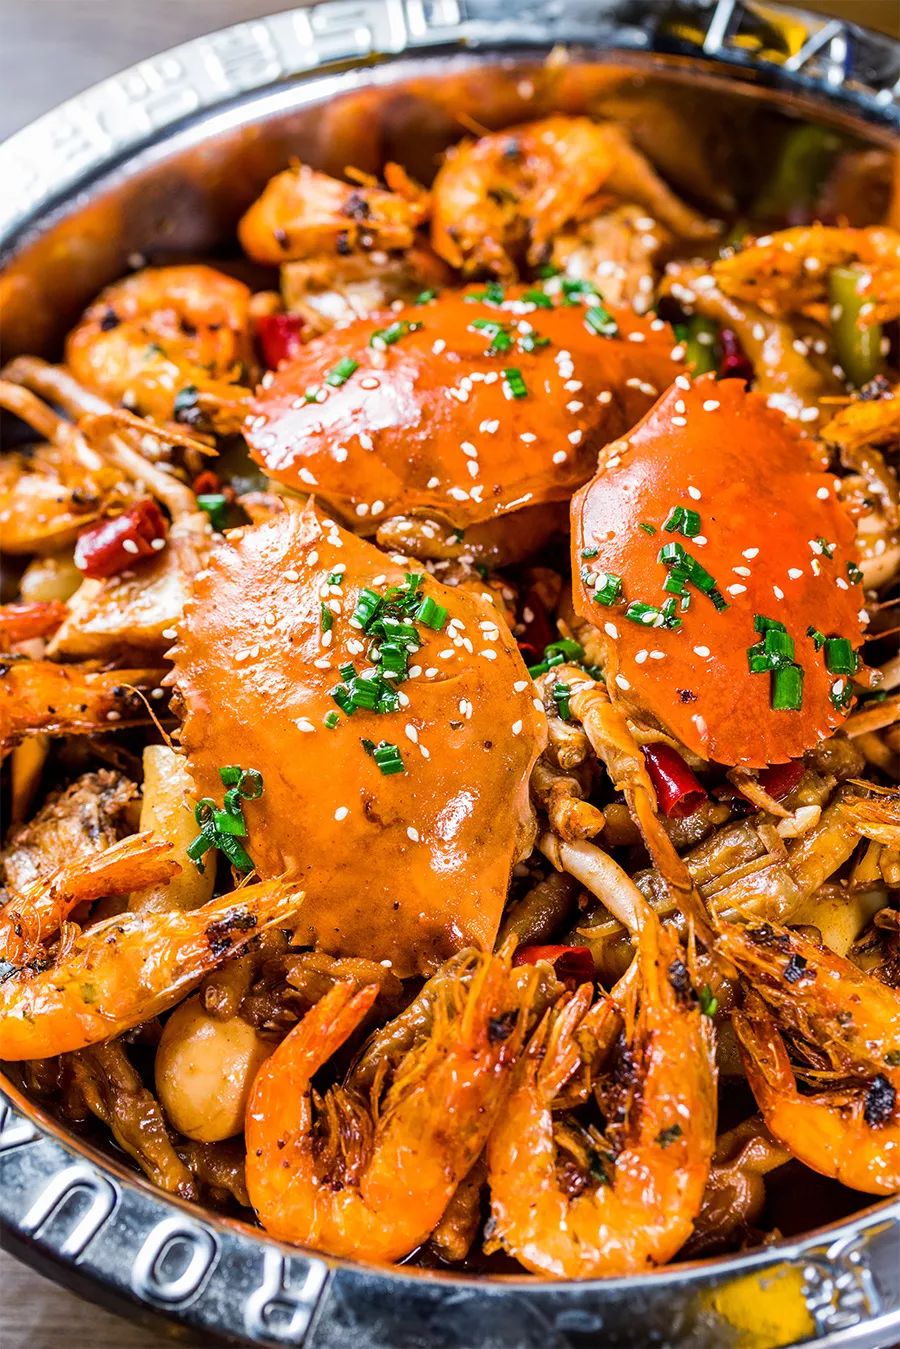 虾蟹煲也是赖胖子家的王牌,大份的有20只虾左右,每只个头都差不多.